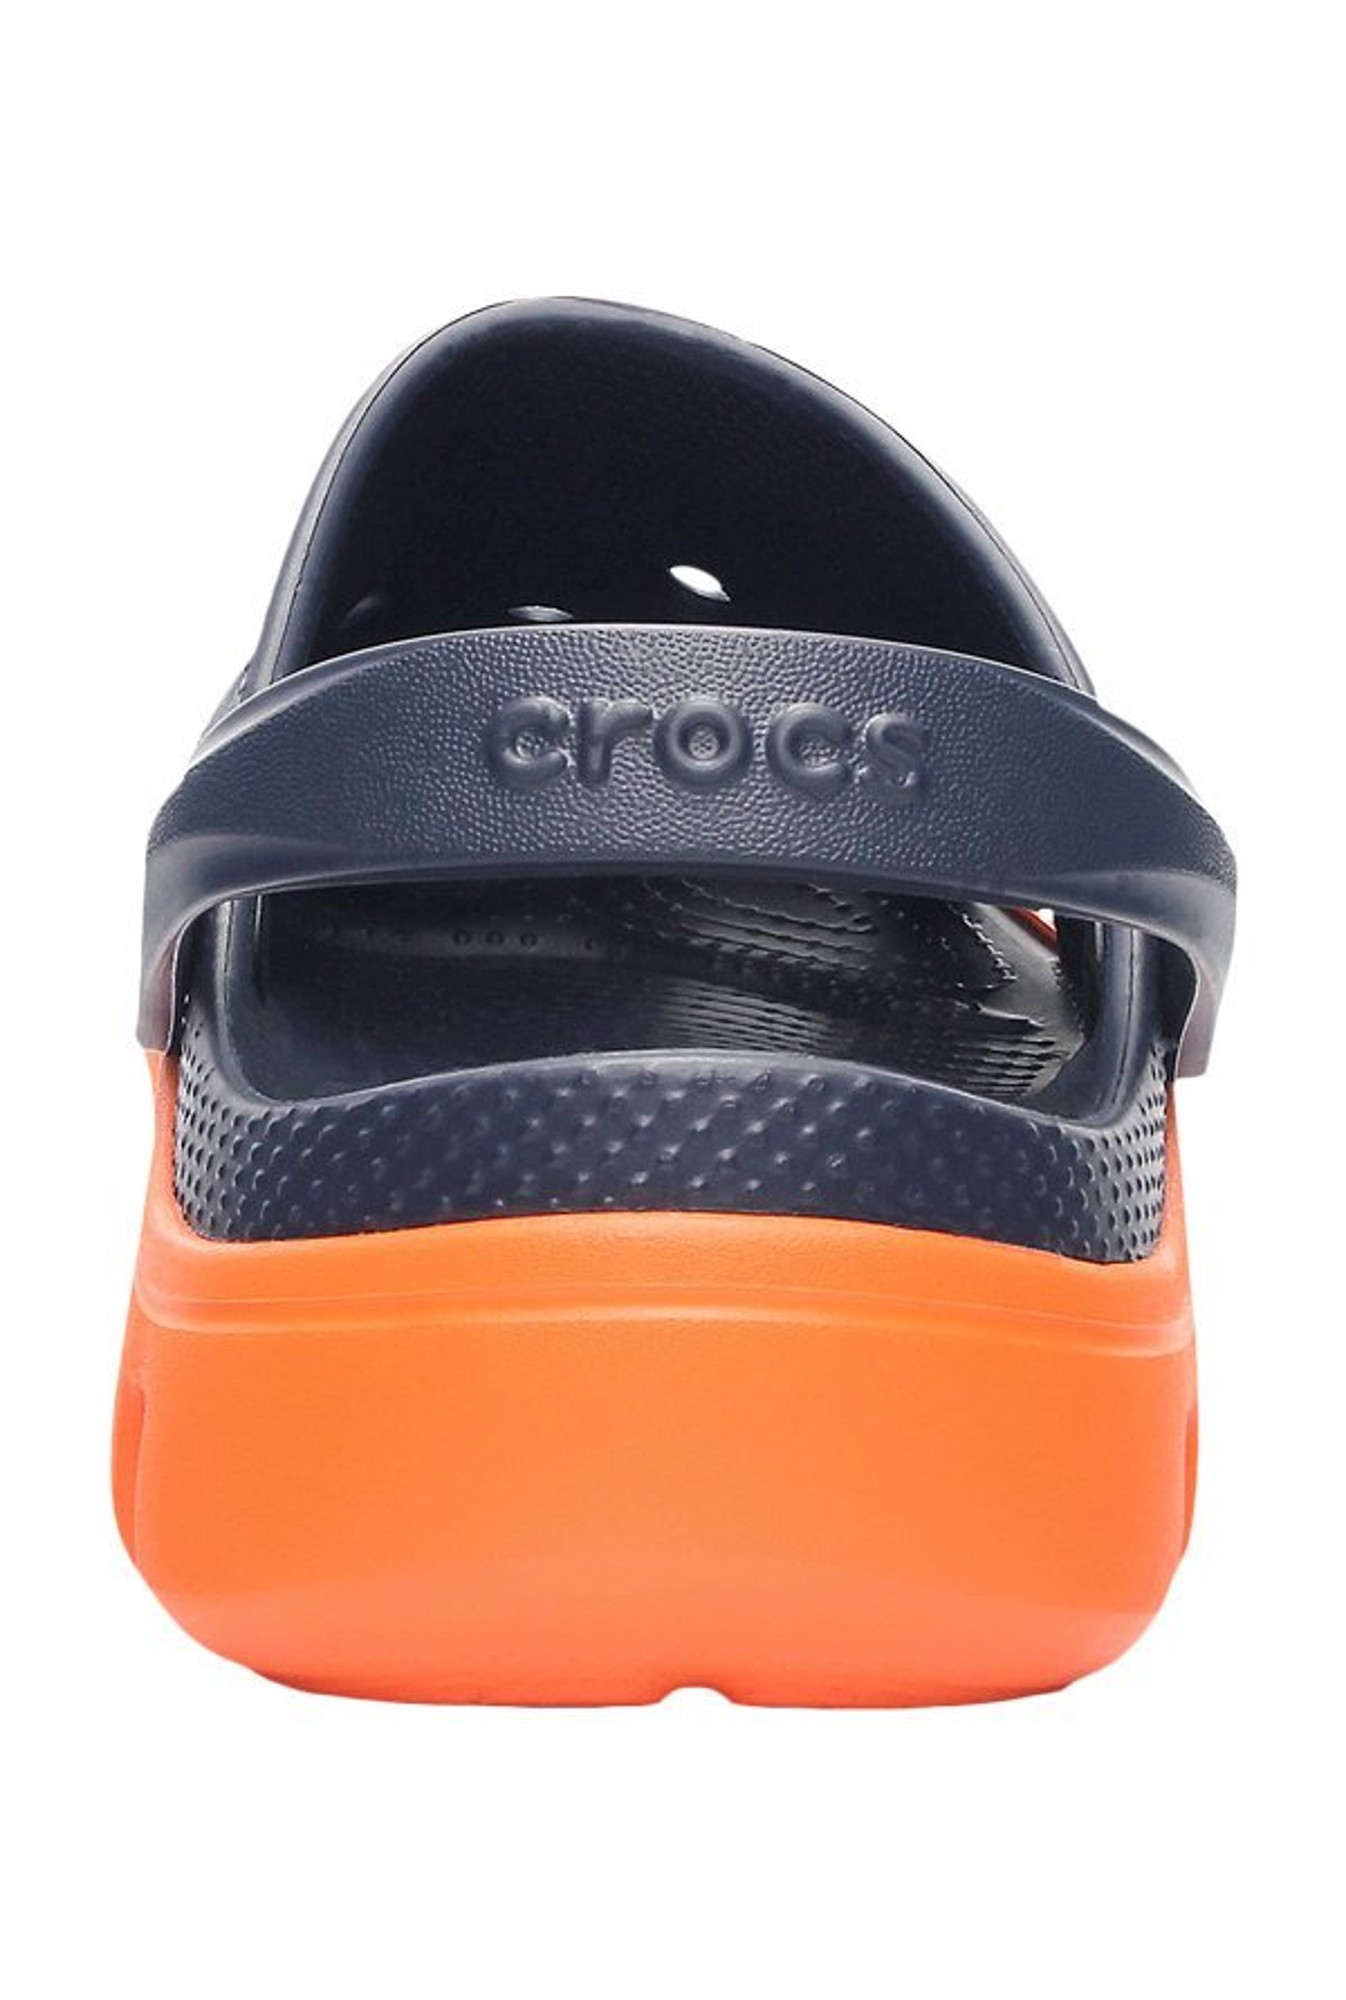 crocs duet sport clog orange